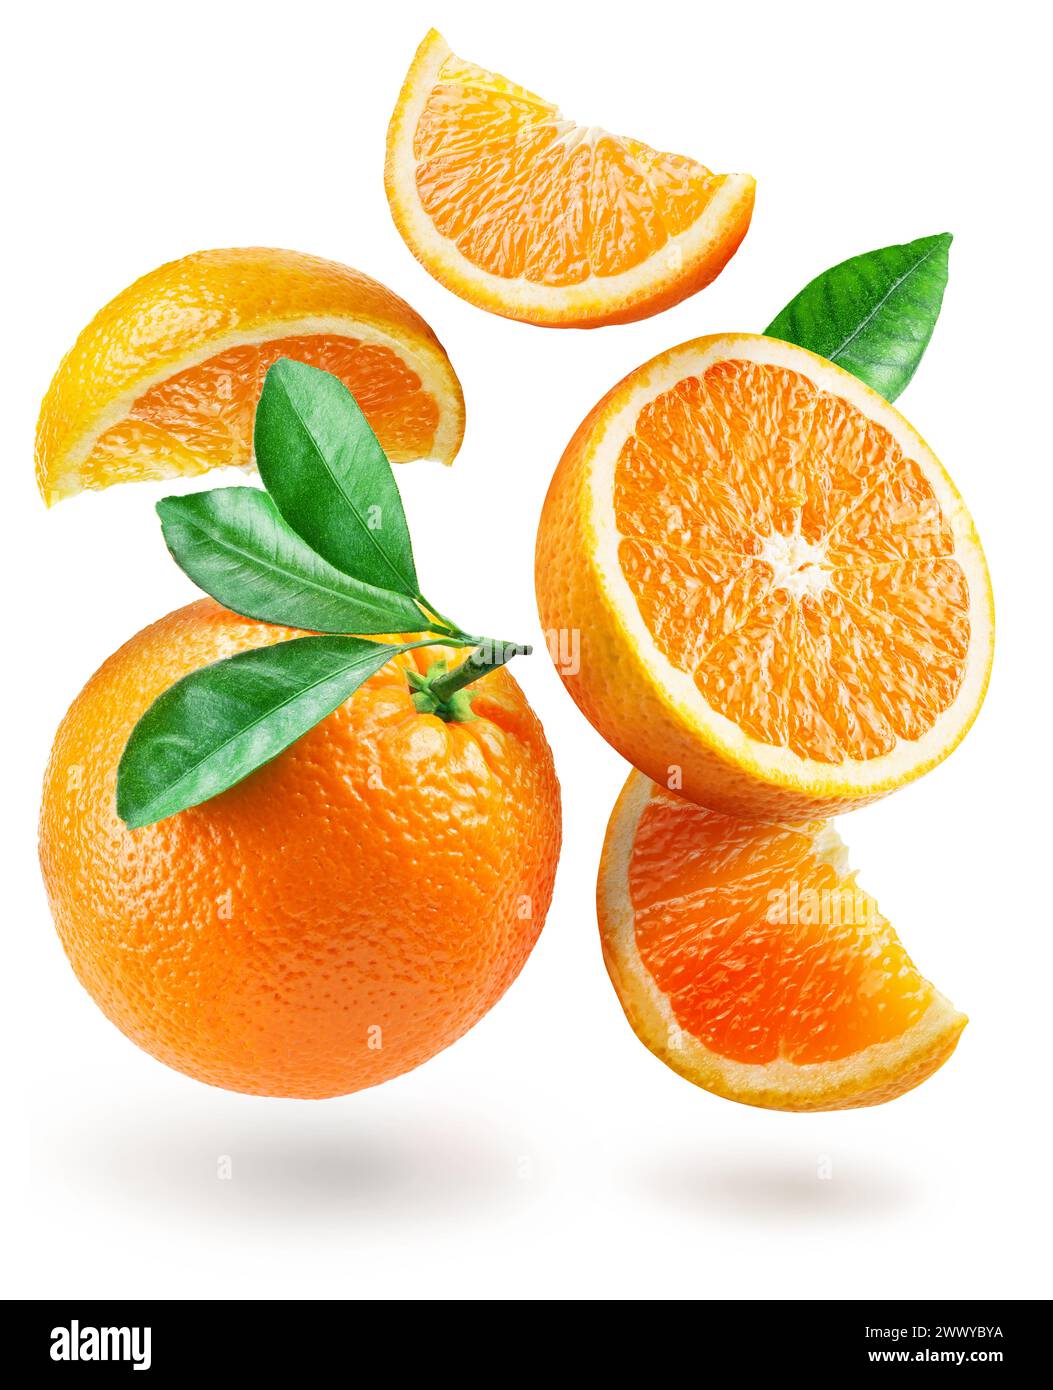 Reife Orangenfrüchte und Orangenscheiben, die in der Luft schweben, auf weißem Hintergrund. Datei enthält Beschneidungspfad. Stockfoto